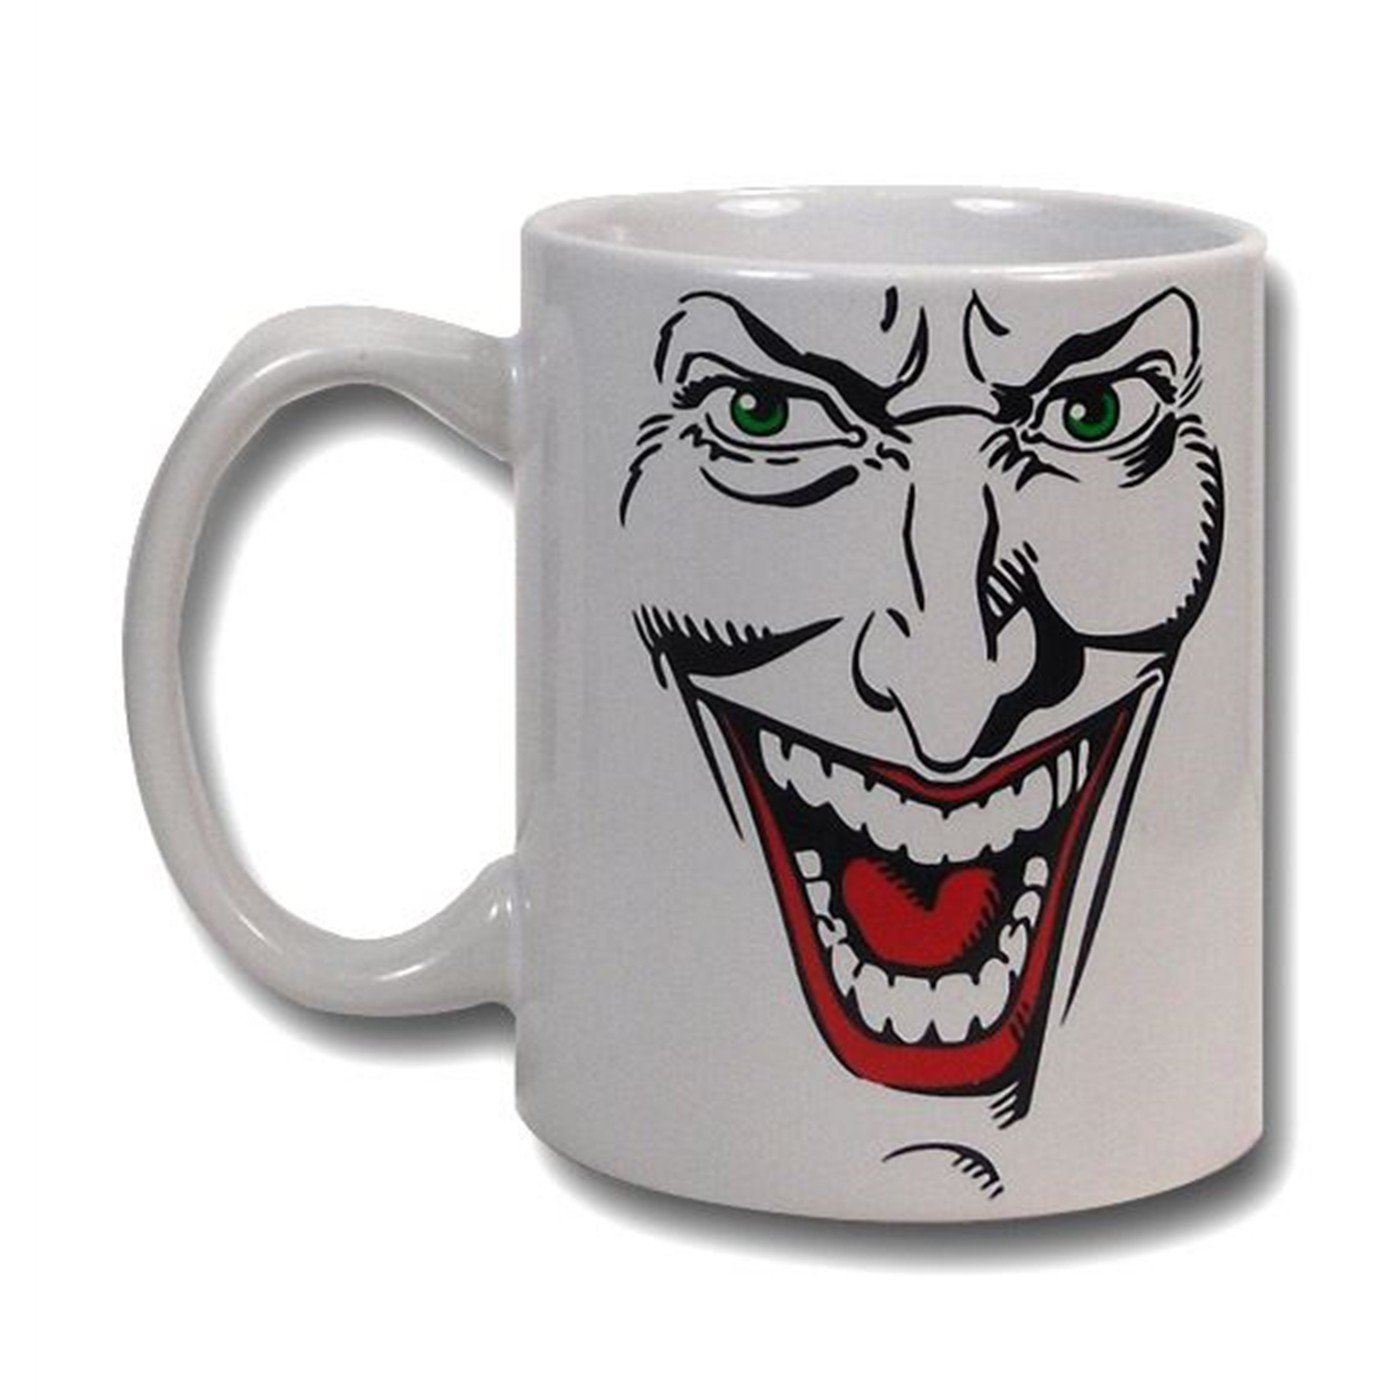 Joker Face Mug